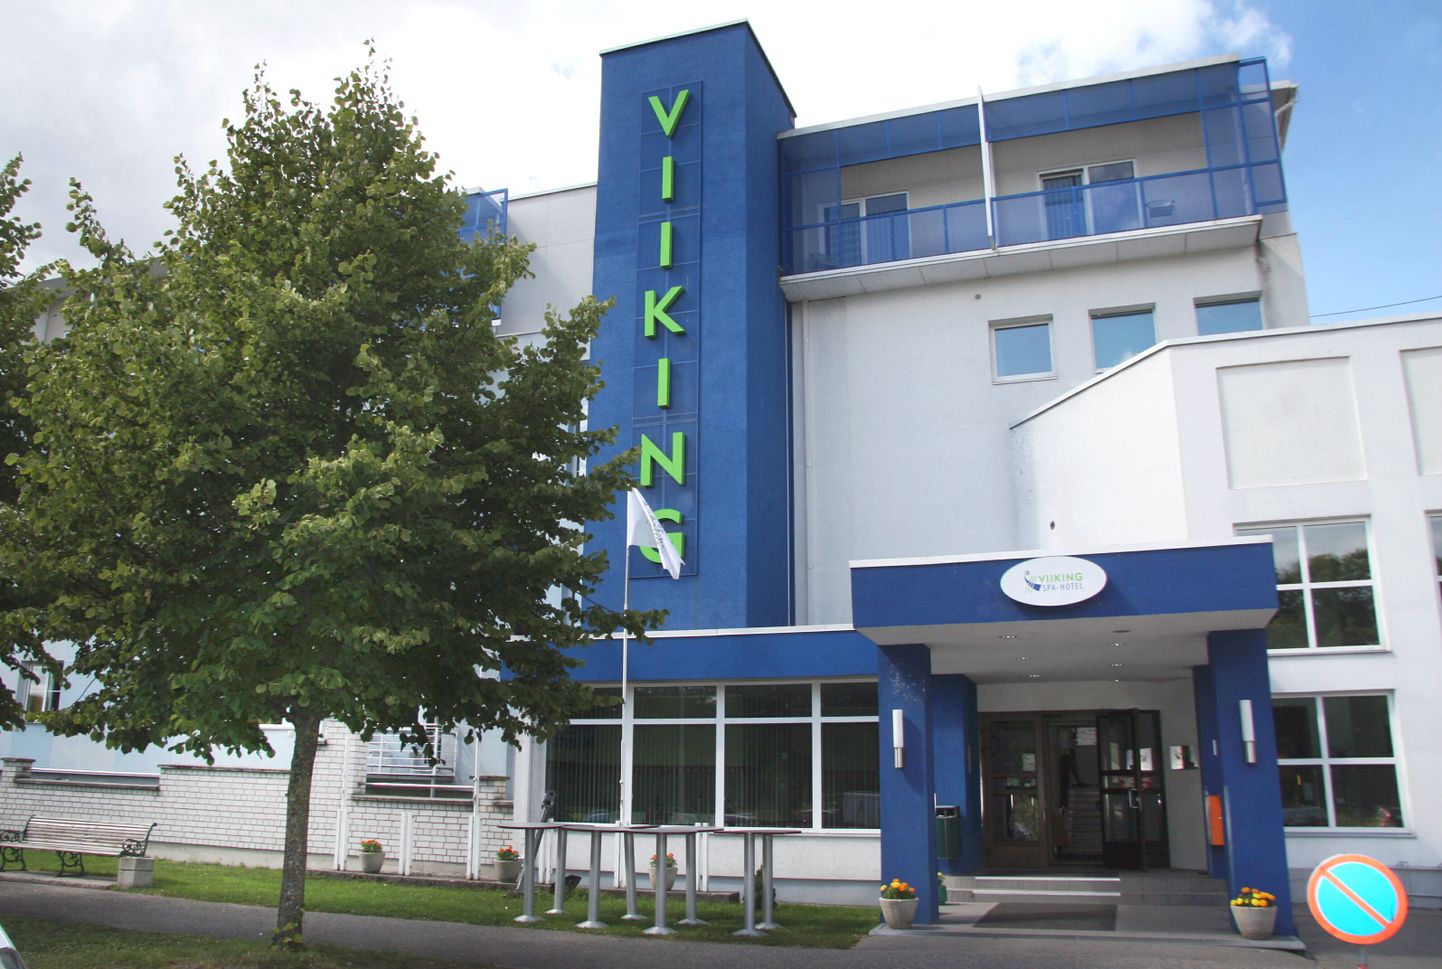 Hotell Viiking Pärnus.